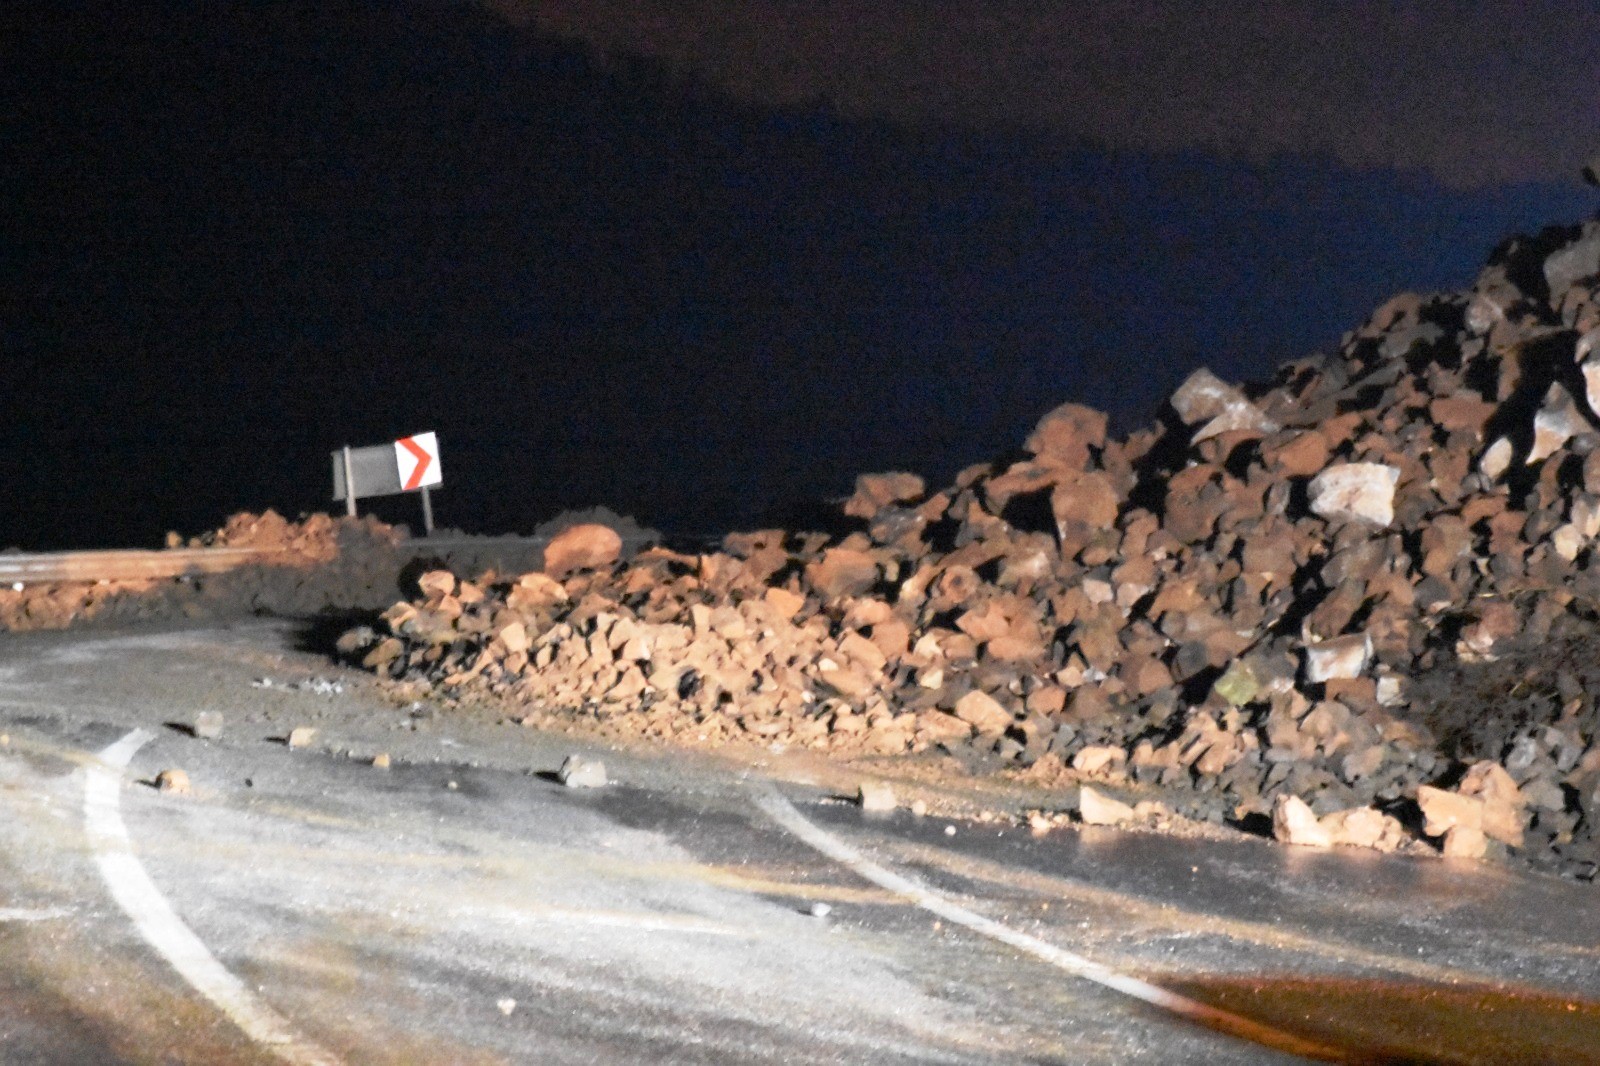 Bitlis'te yola düşen kayalar trafik akışını durdurdu